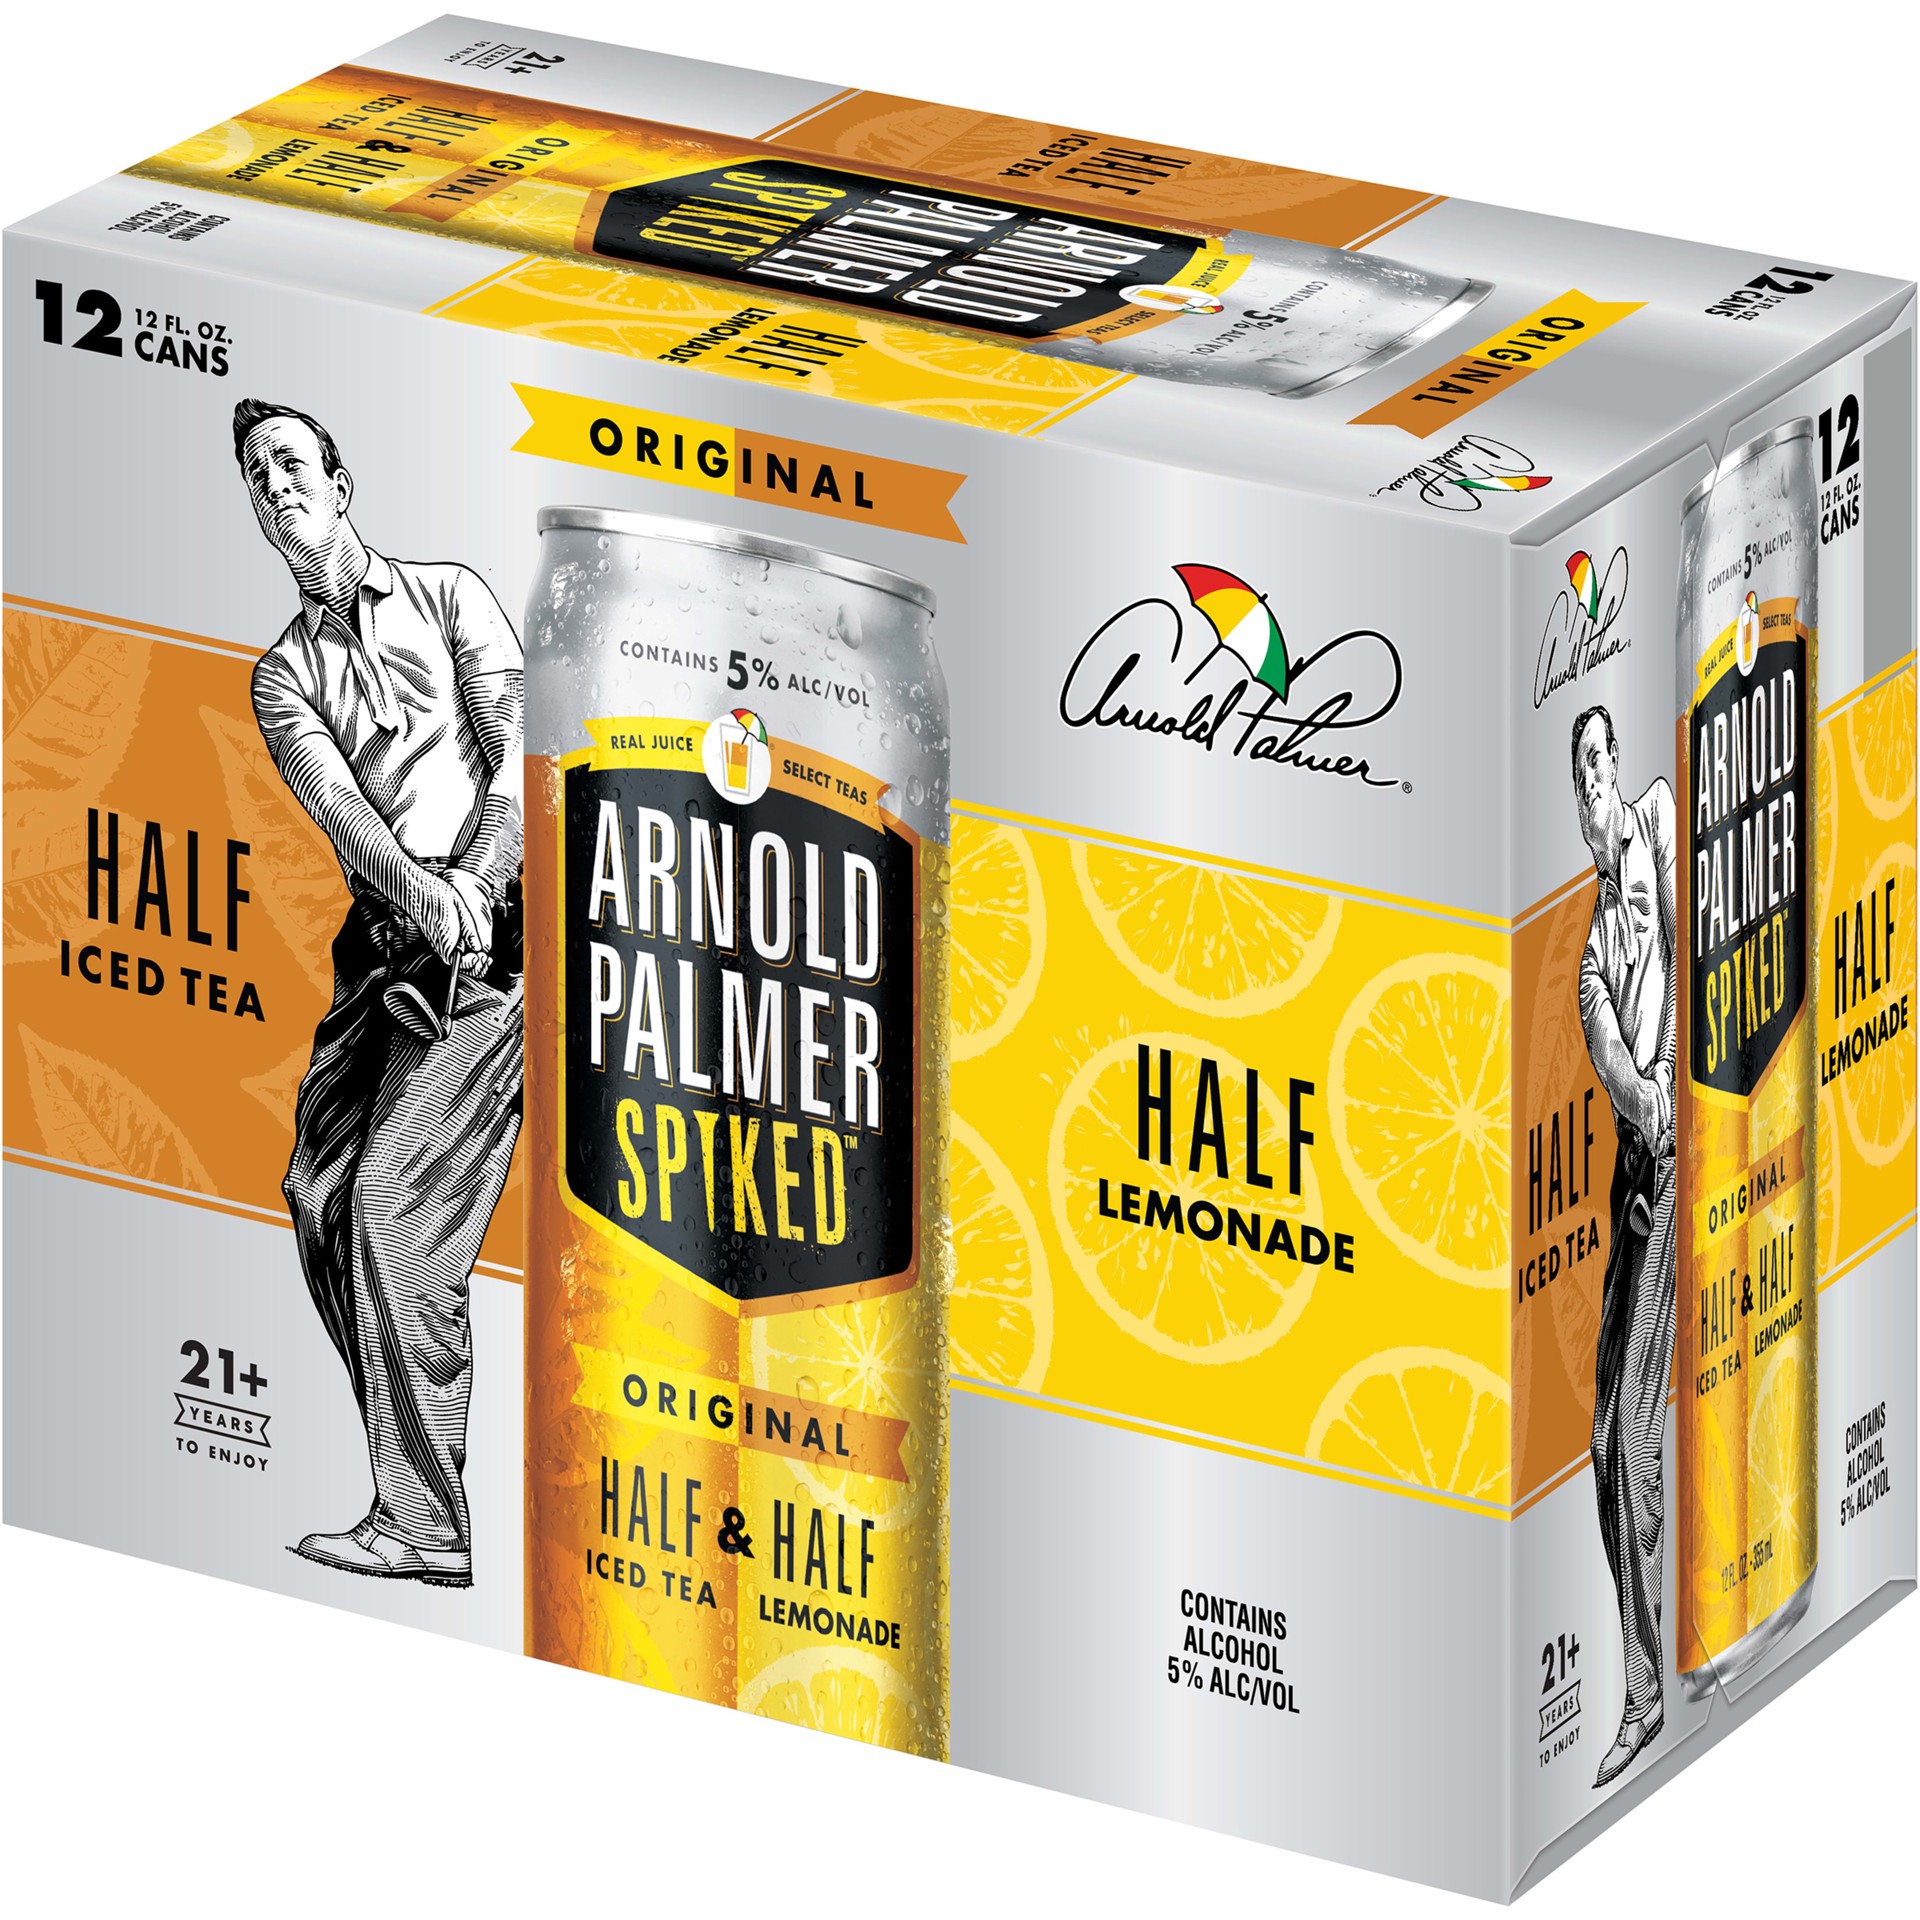 slide 4 of 5, Arnold Palmer Spiked Half & Half Original Arnold Palmer Spiked Original Half & Half Iced Tea Lemonade, 12 Pack, 12 fl oz Cans, 5% ABV, 144 fl oz